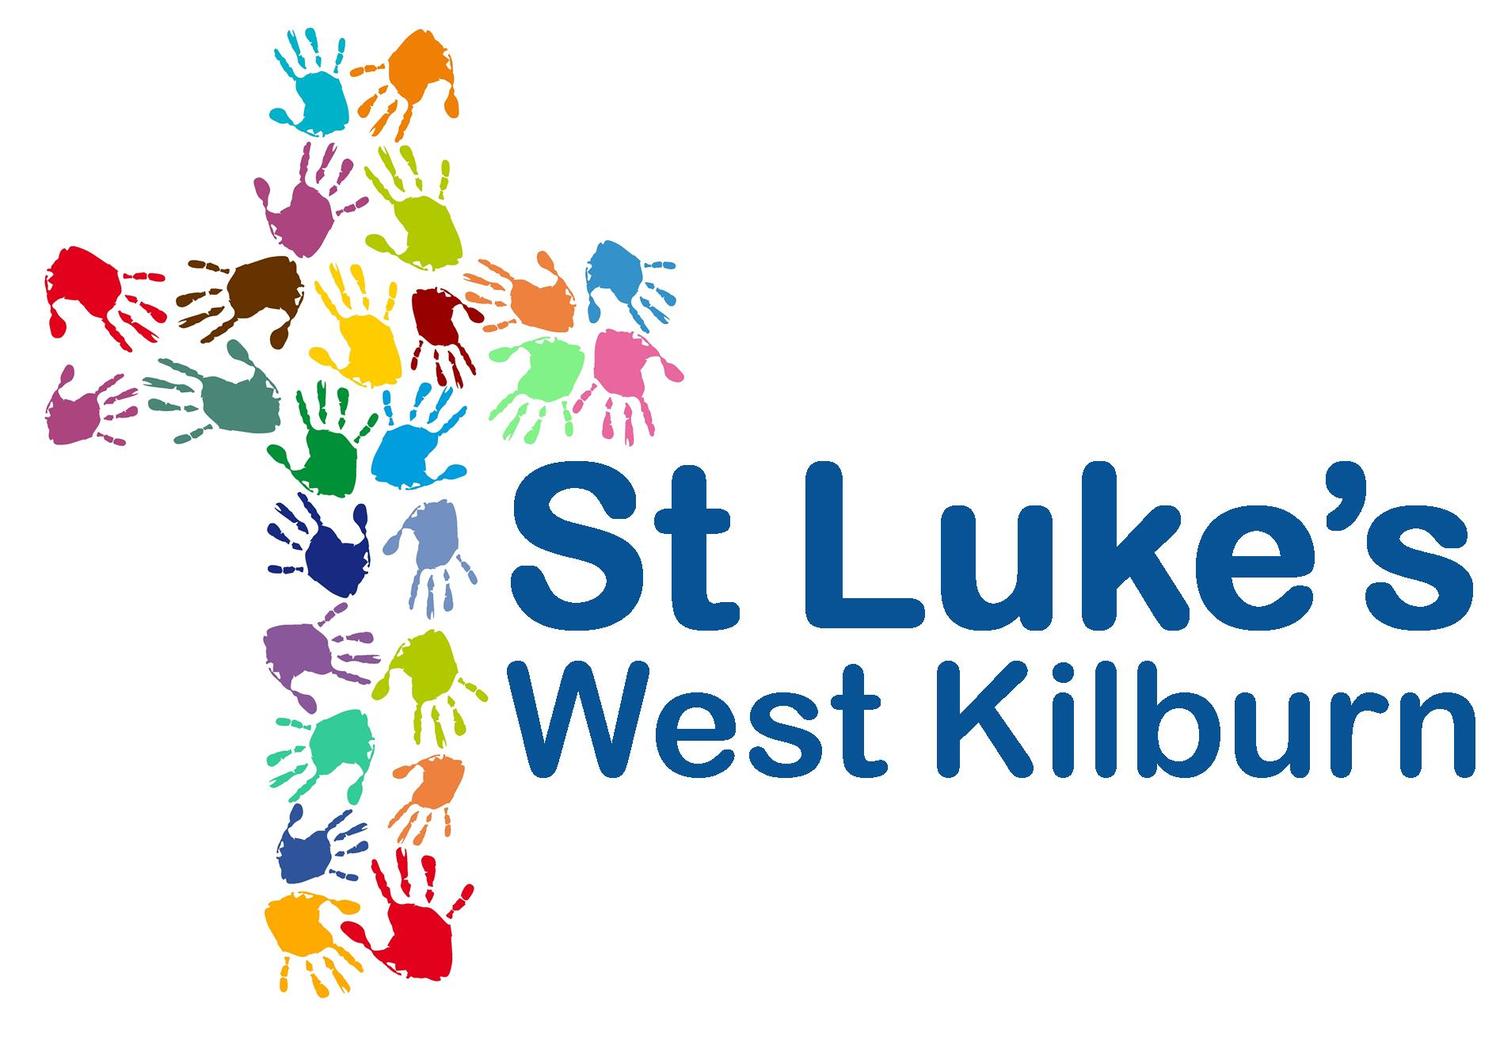 St Luke's West Kilburn